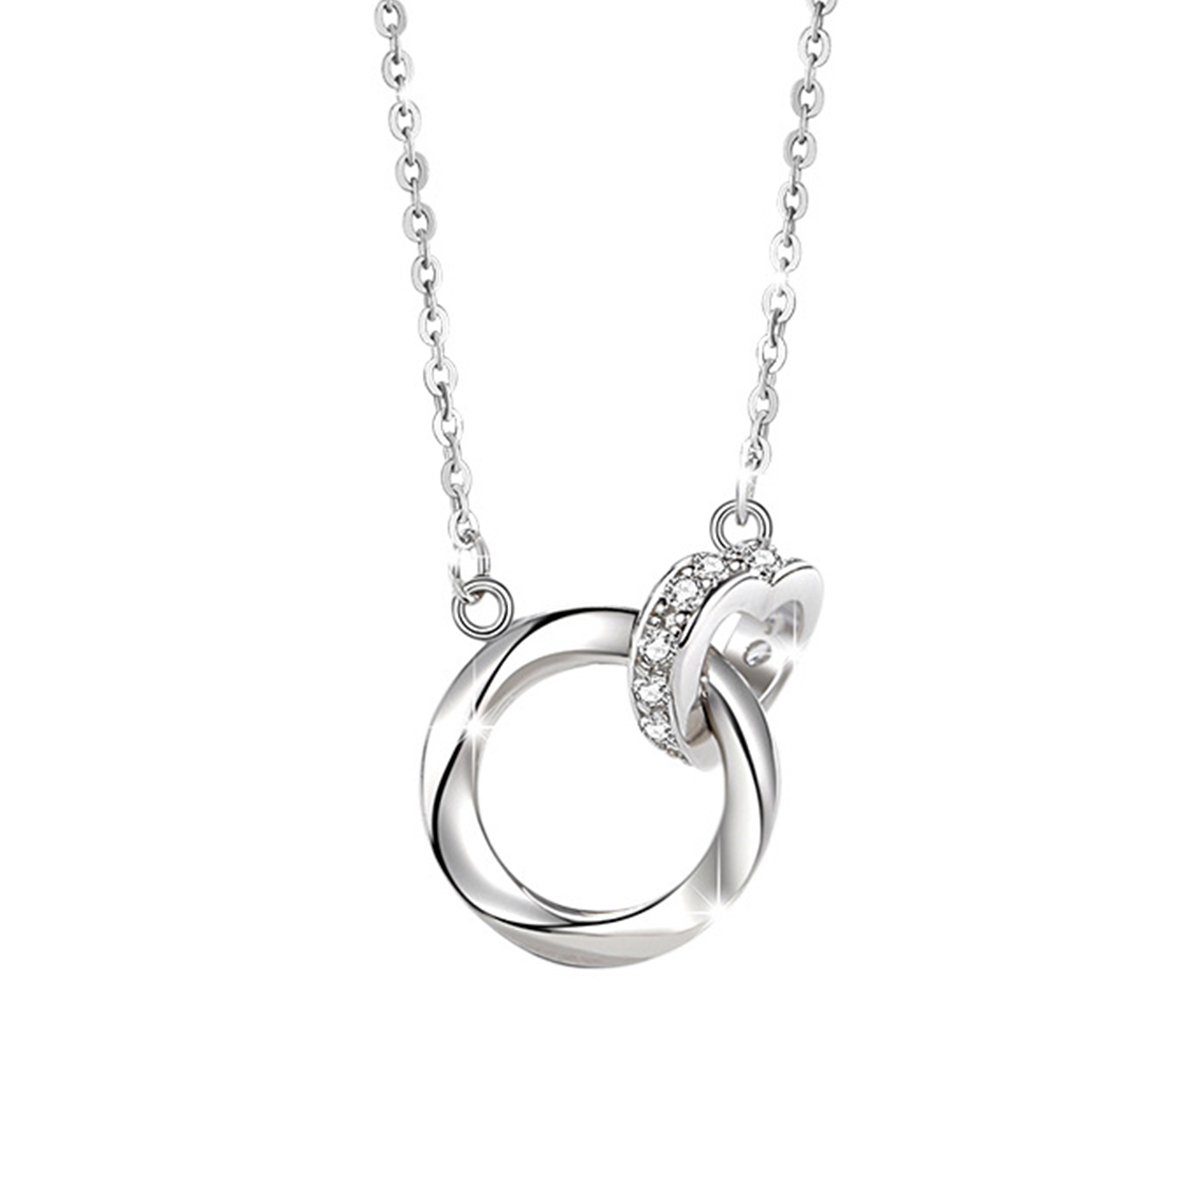 Haiaveng Herzkette Halskette aus 925 Sterling Silber, für Mutter, Tochter, Frau oder Freundin zum Geburtstag, Muttertag